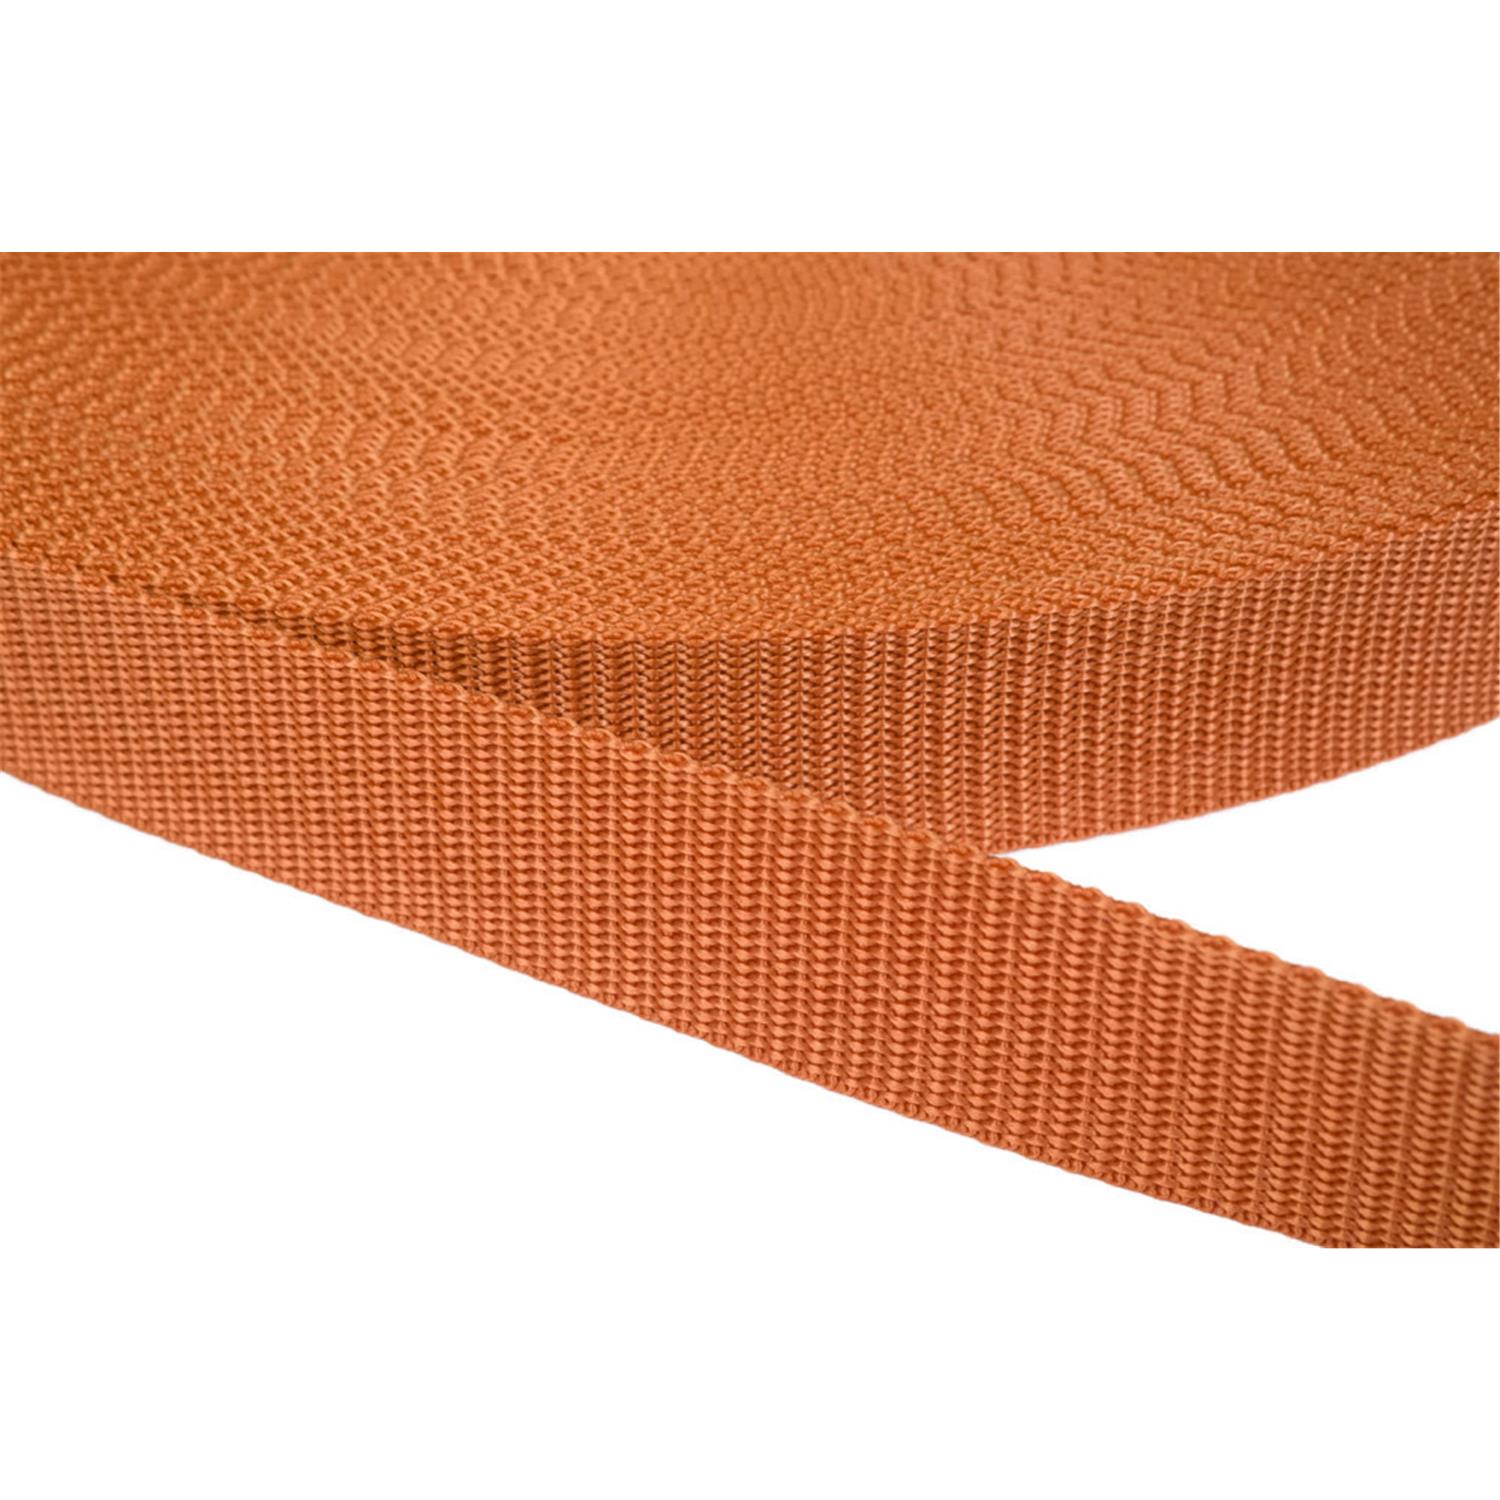 Gurtband 10mm breit aus Polypropylen in 41 Farben 05 - ockerbraun 50 Meter